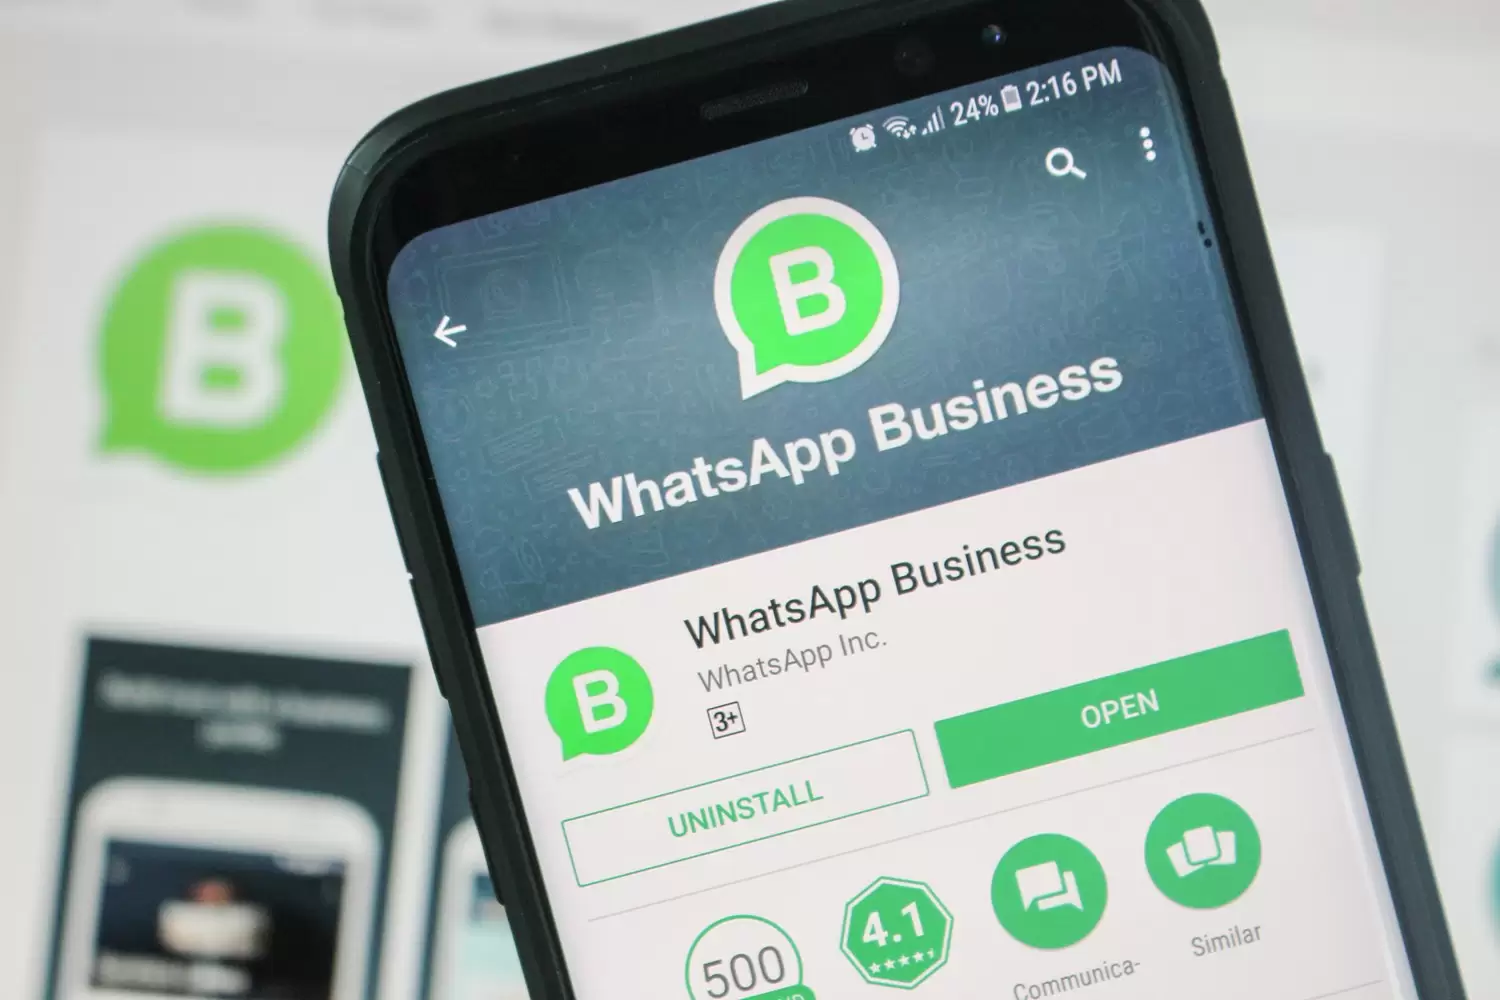 WhatsApp Business: Cara Menggunakan Katalog untuk Meningkatkan Bisnis Anda